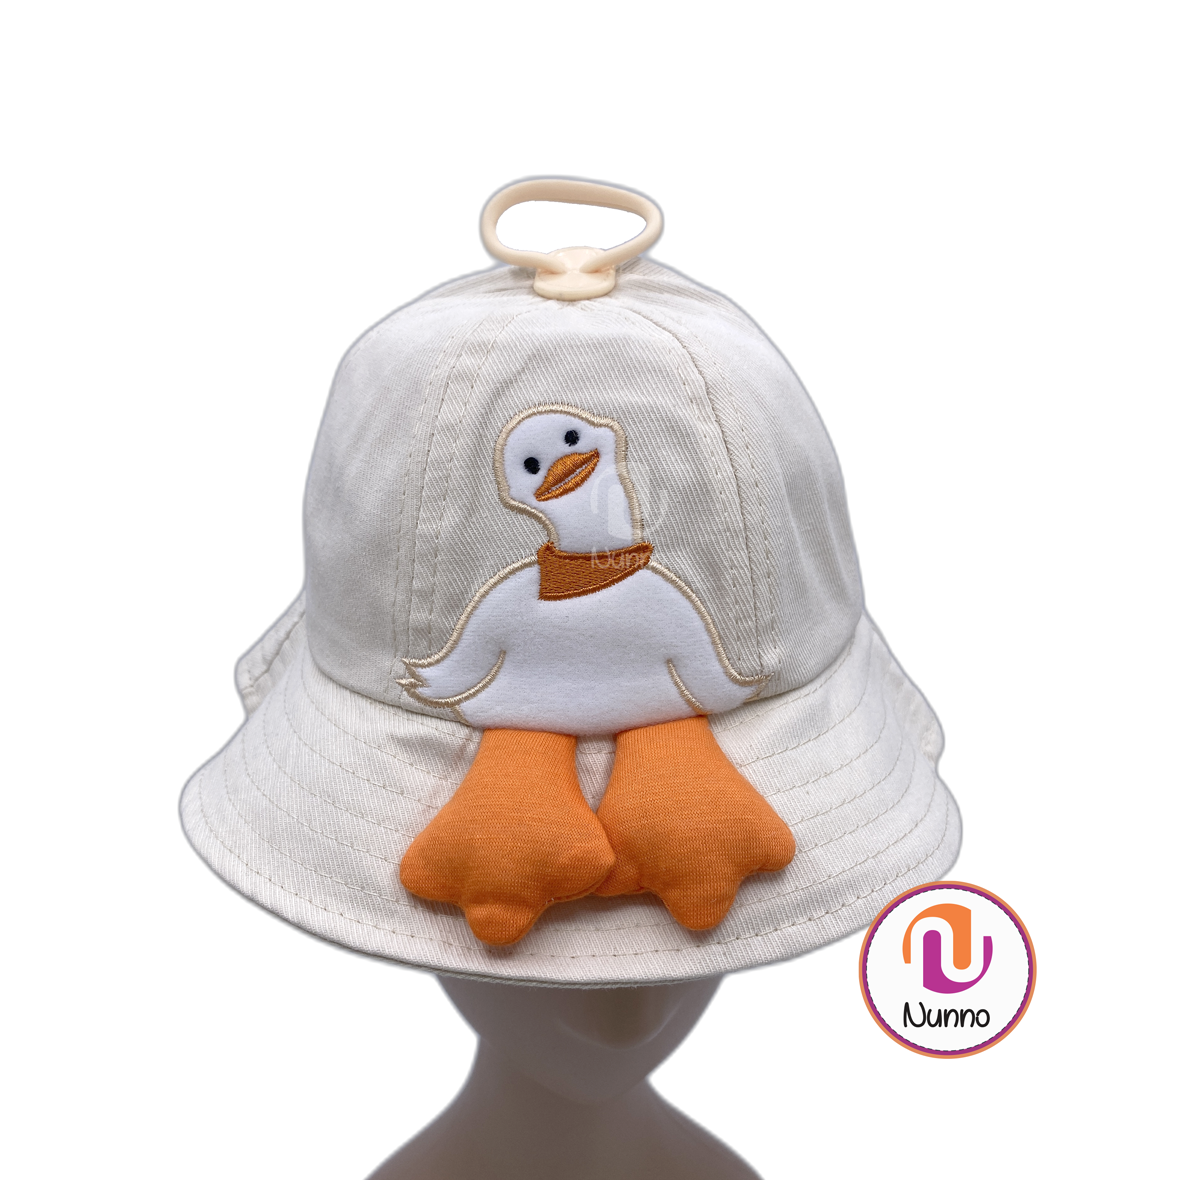 Sombrero Infantil de Nunno